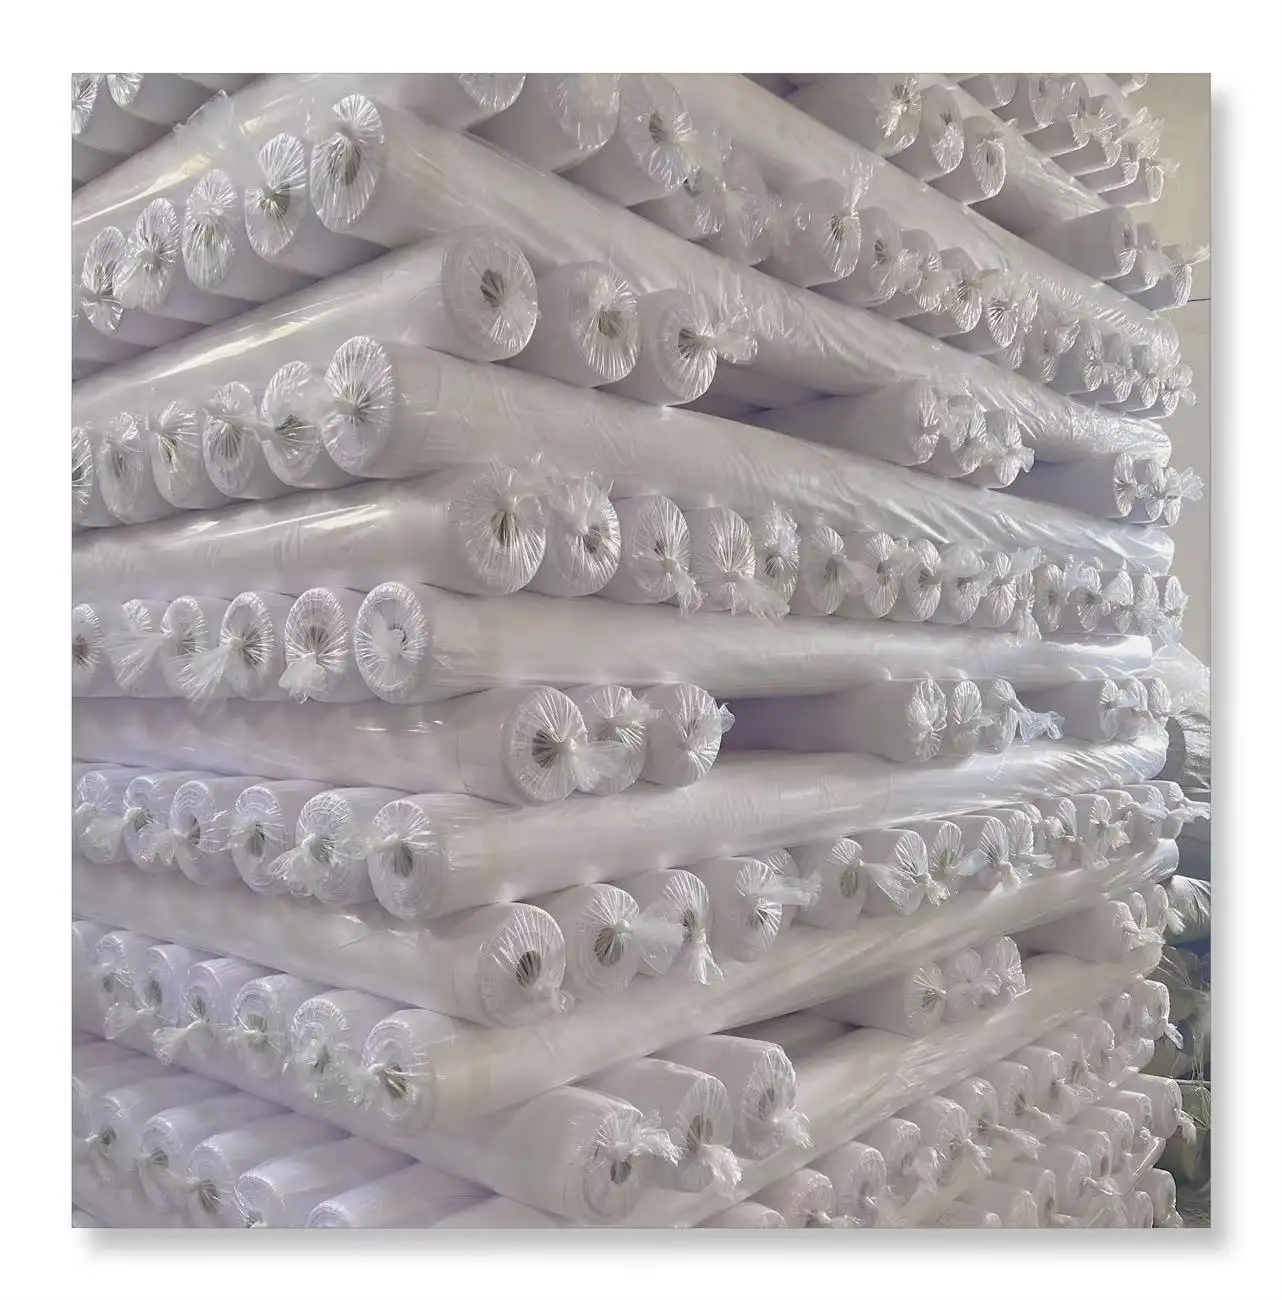 Pabrik Harga Murah pabrik sumber kain poliester kain pemutih kulit persik kain putih